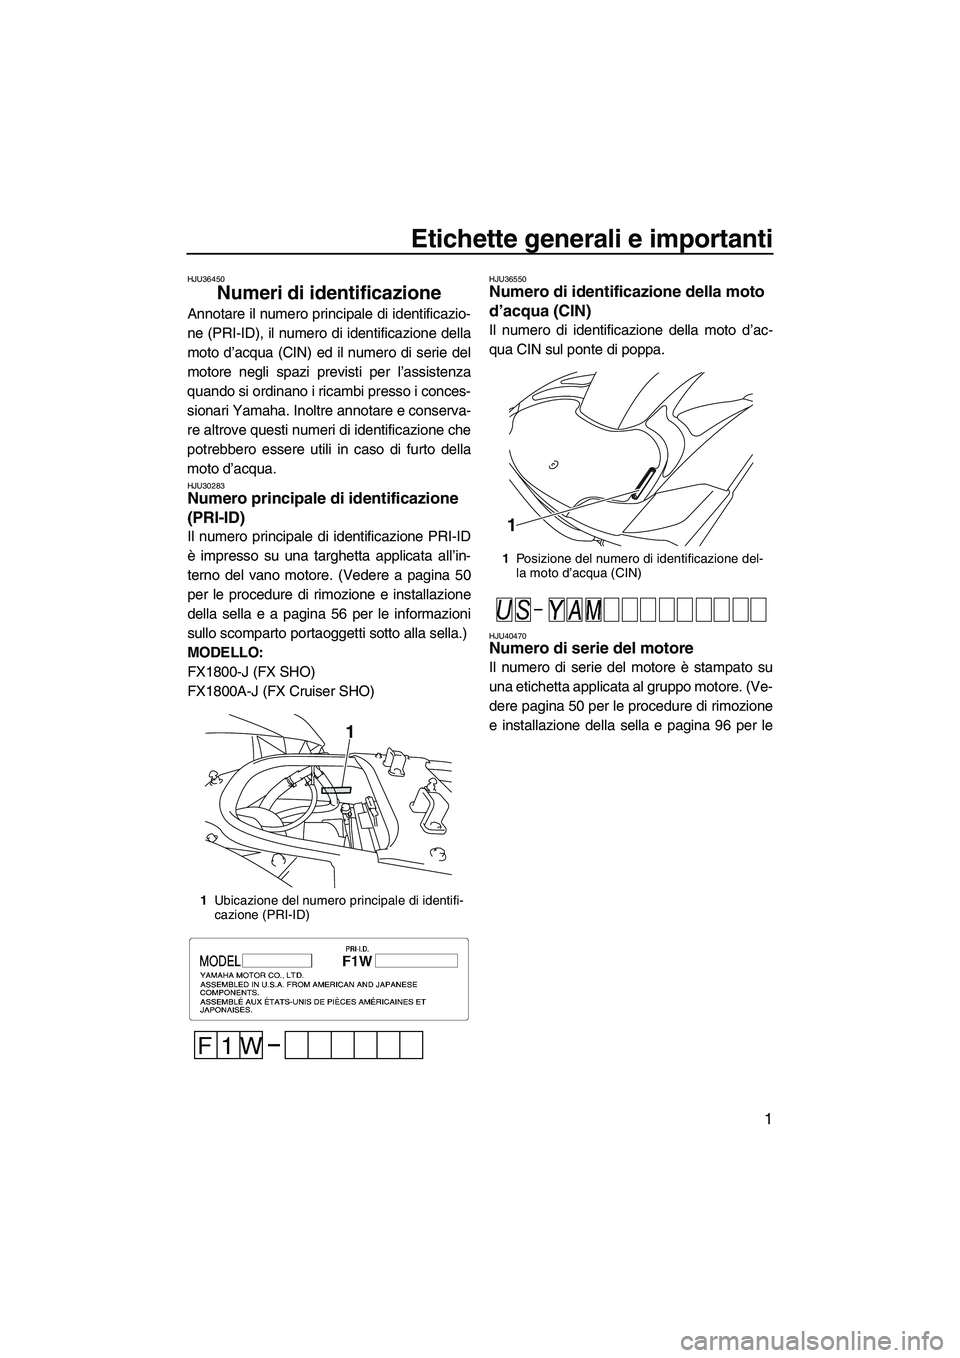 YAMAHA FX SHO 2010  Manuale duso (in Italian) Etichette generali e importanti
1
HJU36450
Numeri di identificazione 
Annotare il numero principale di identificazio-
ne (PRI-ID), il numero di identificazione della
moto d’acqua (CIN) ed il numero 